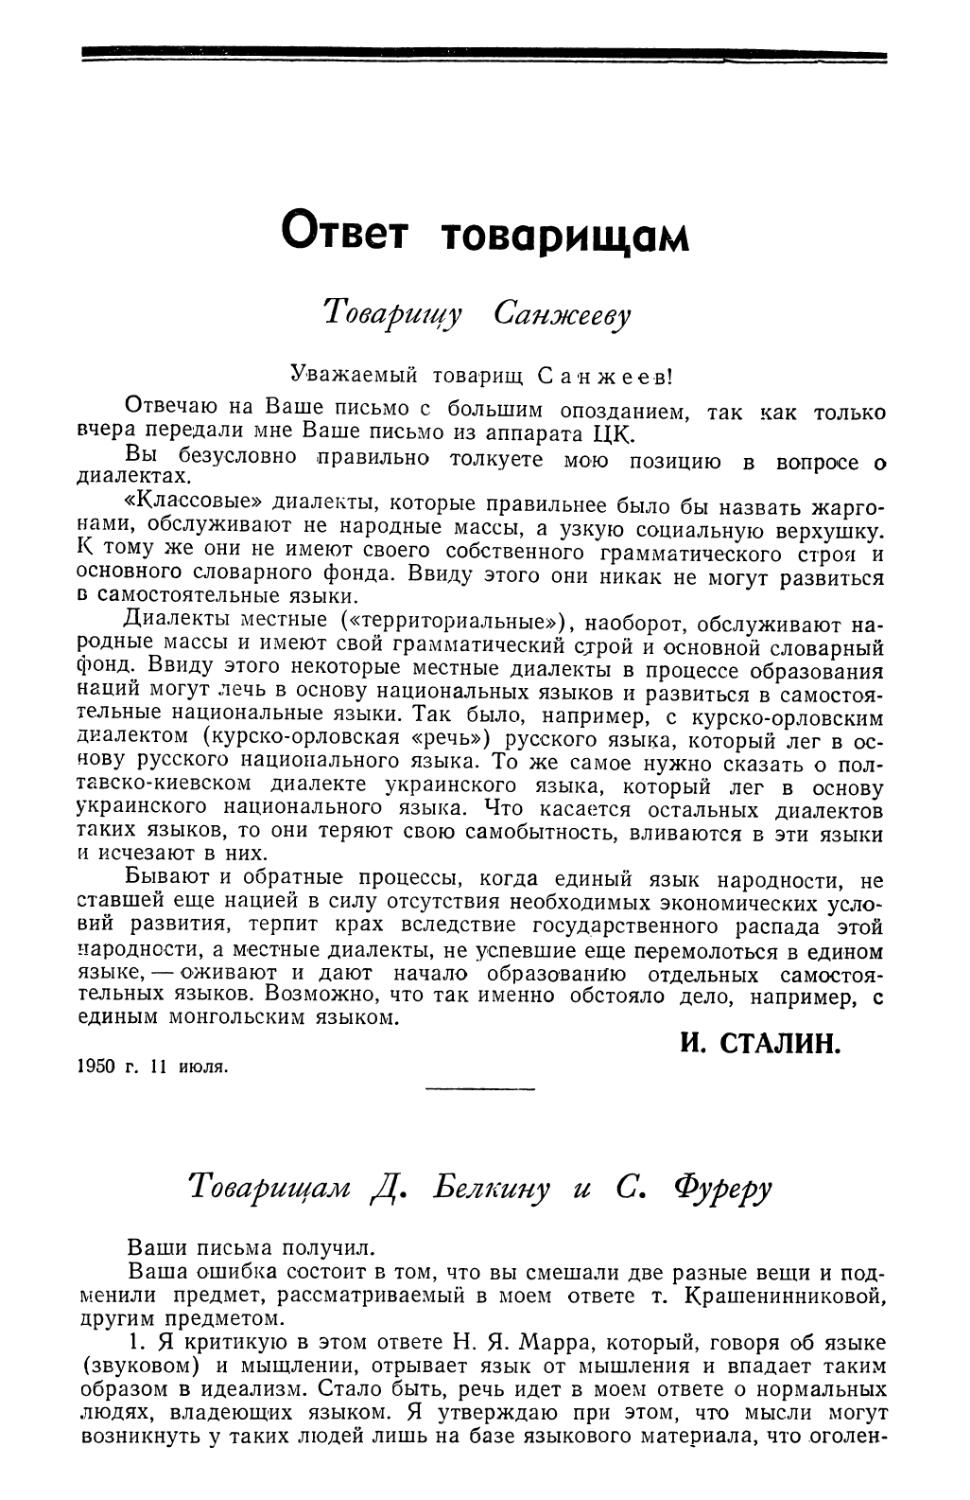 И. Сталин — Ответ товарищам
Товарищам Д. Белкину и С. Фуреру